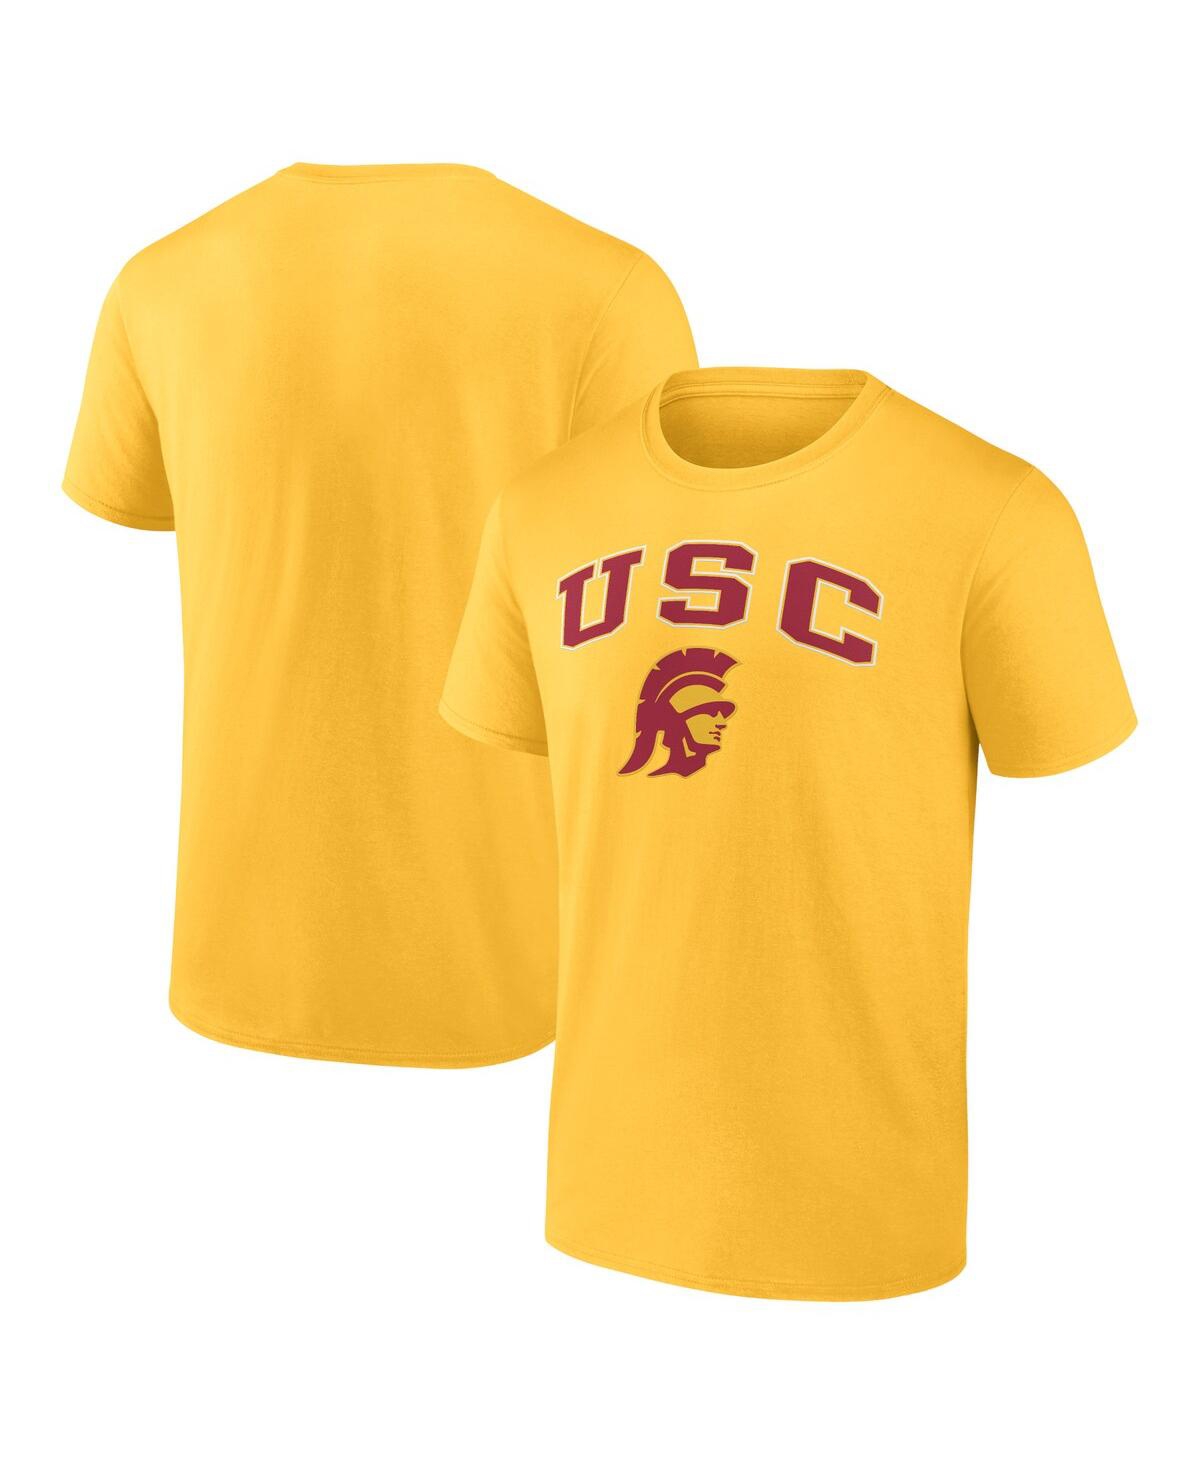 Fanatics Men's  Gold Usc Trojans Campus T-shirt